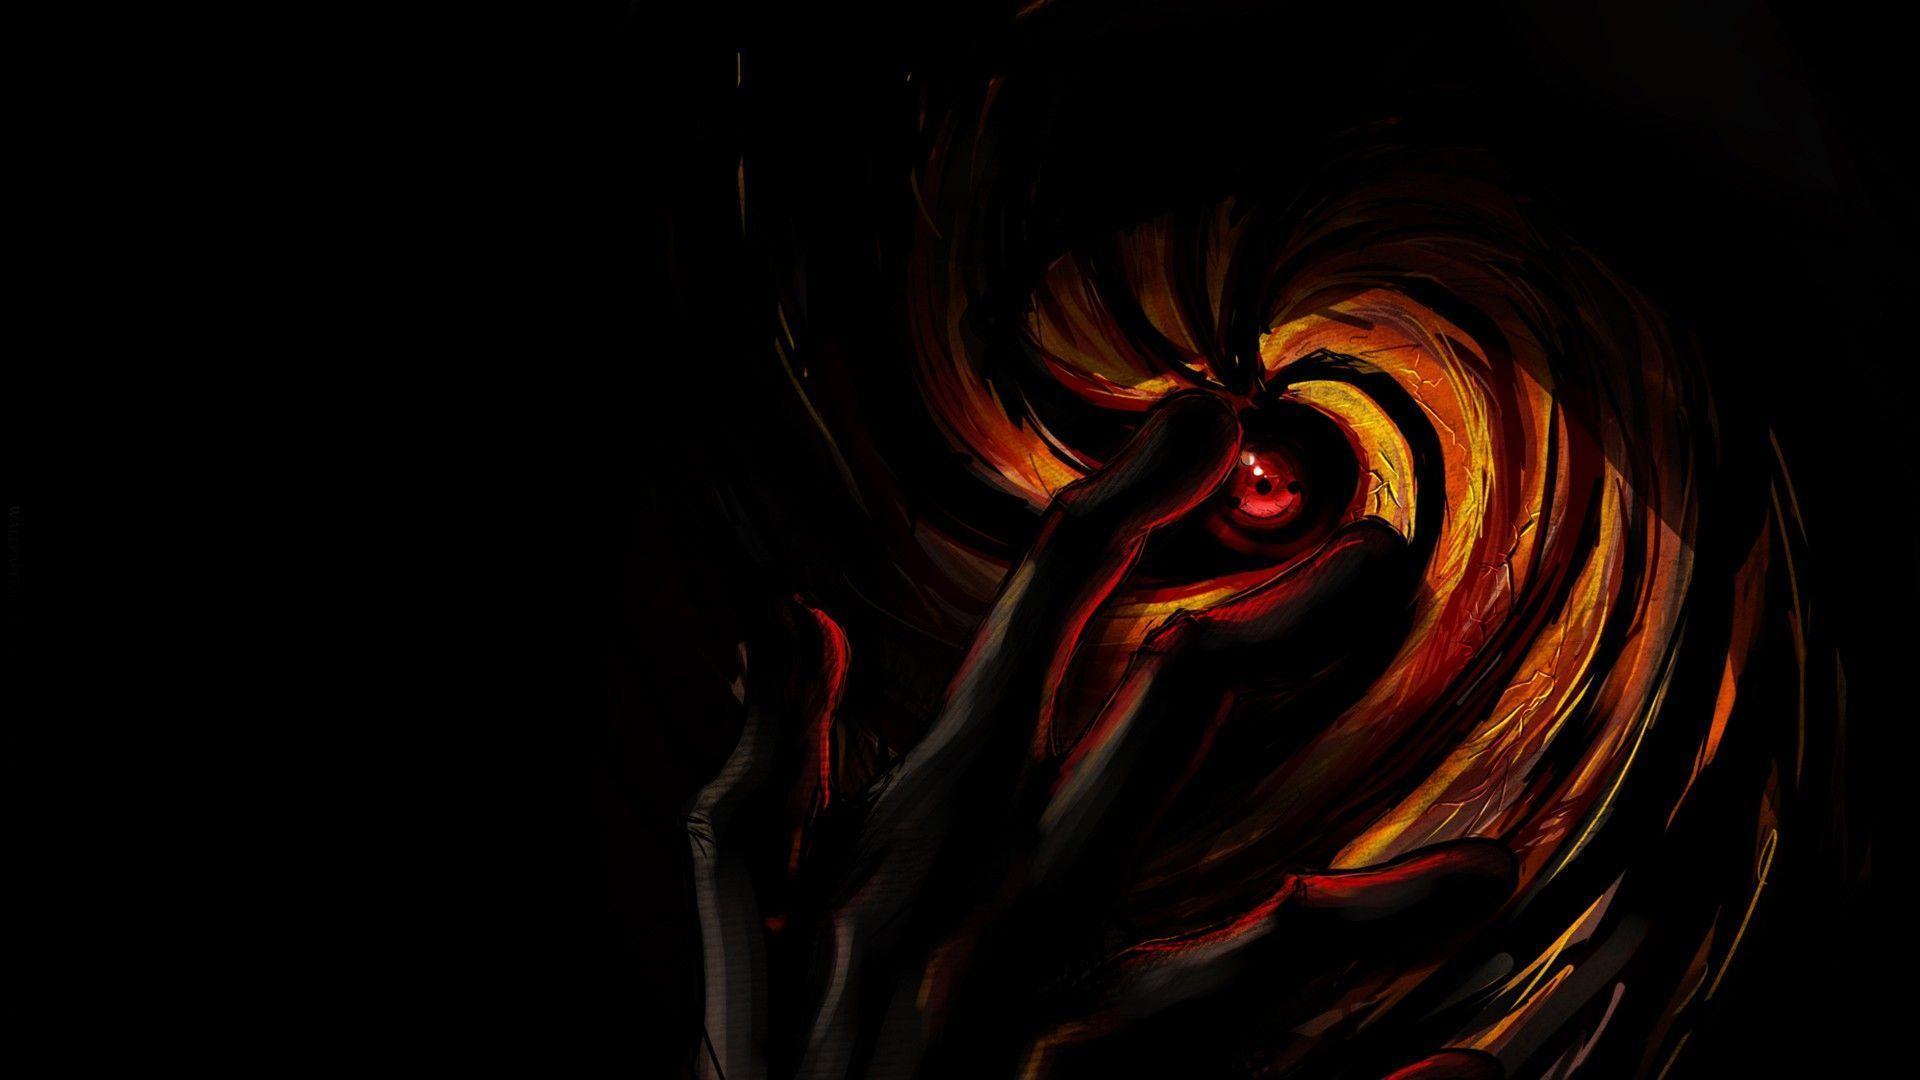 Naruto Wallpaper HD 13 Background. Wallruru